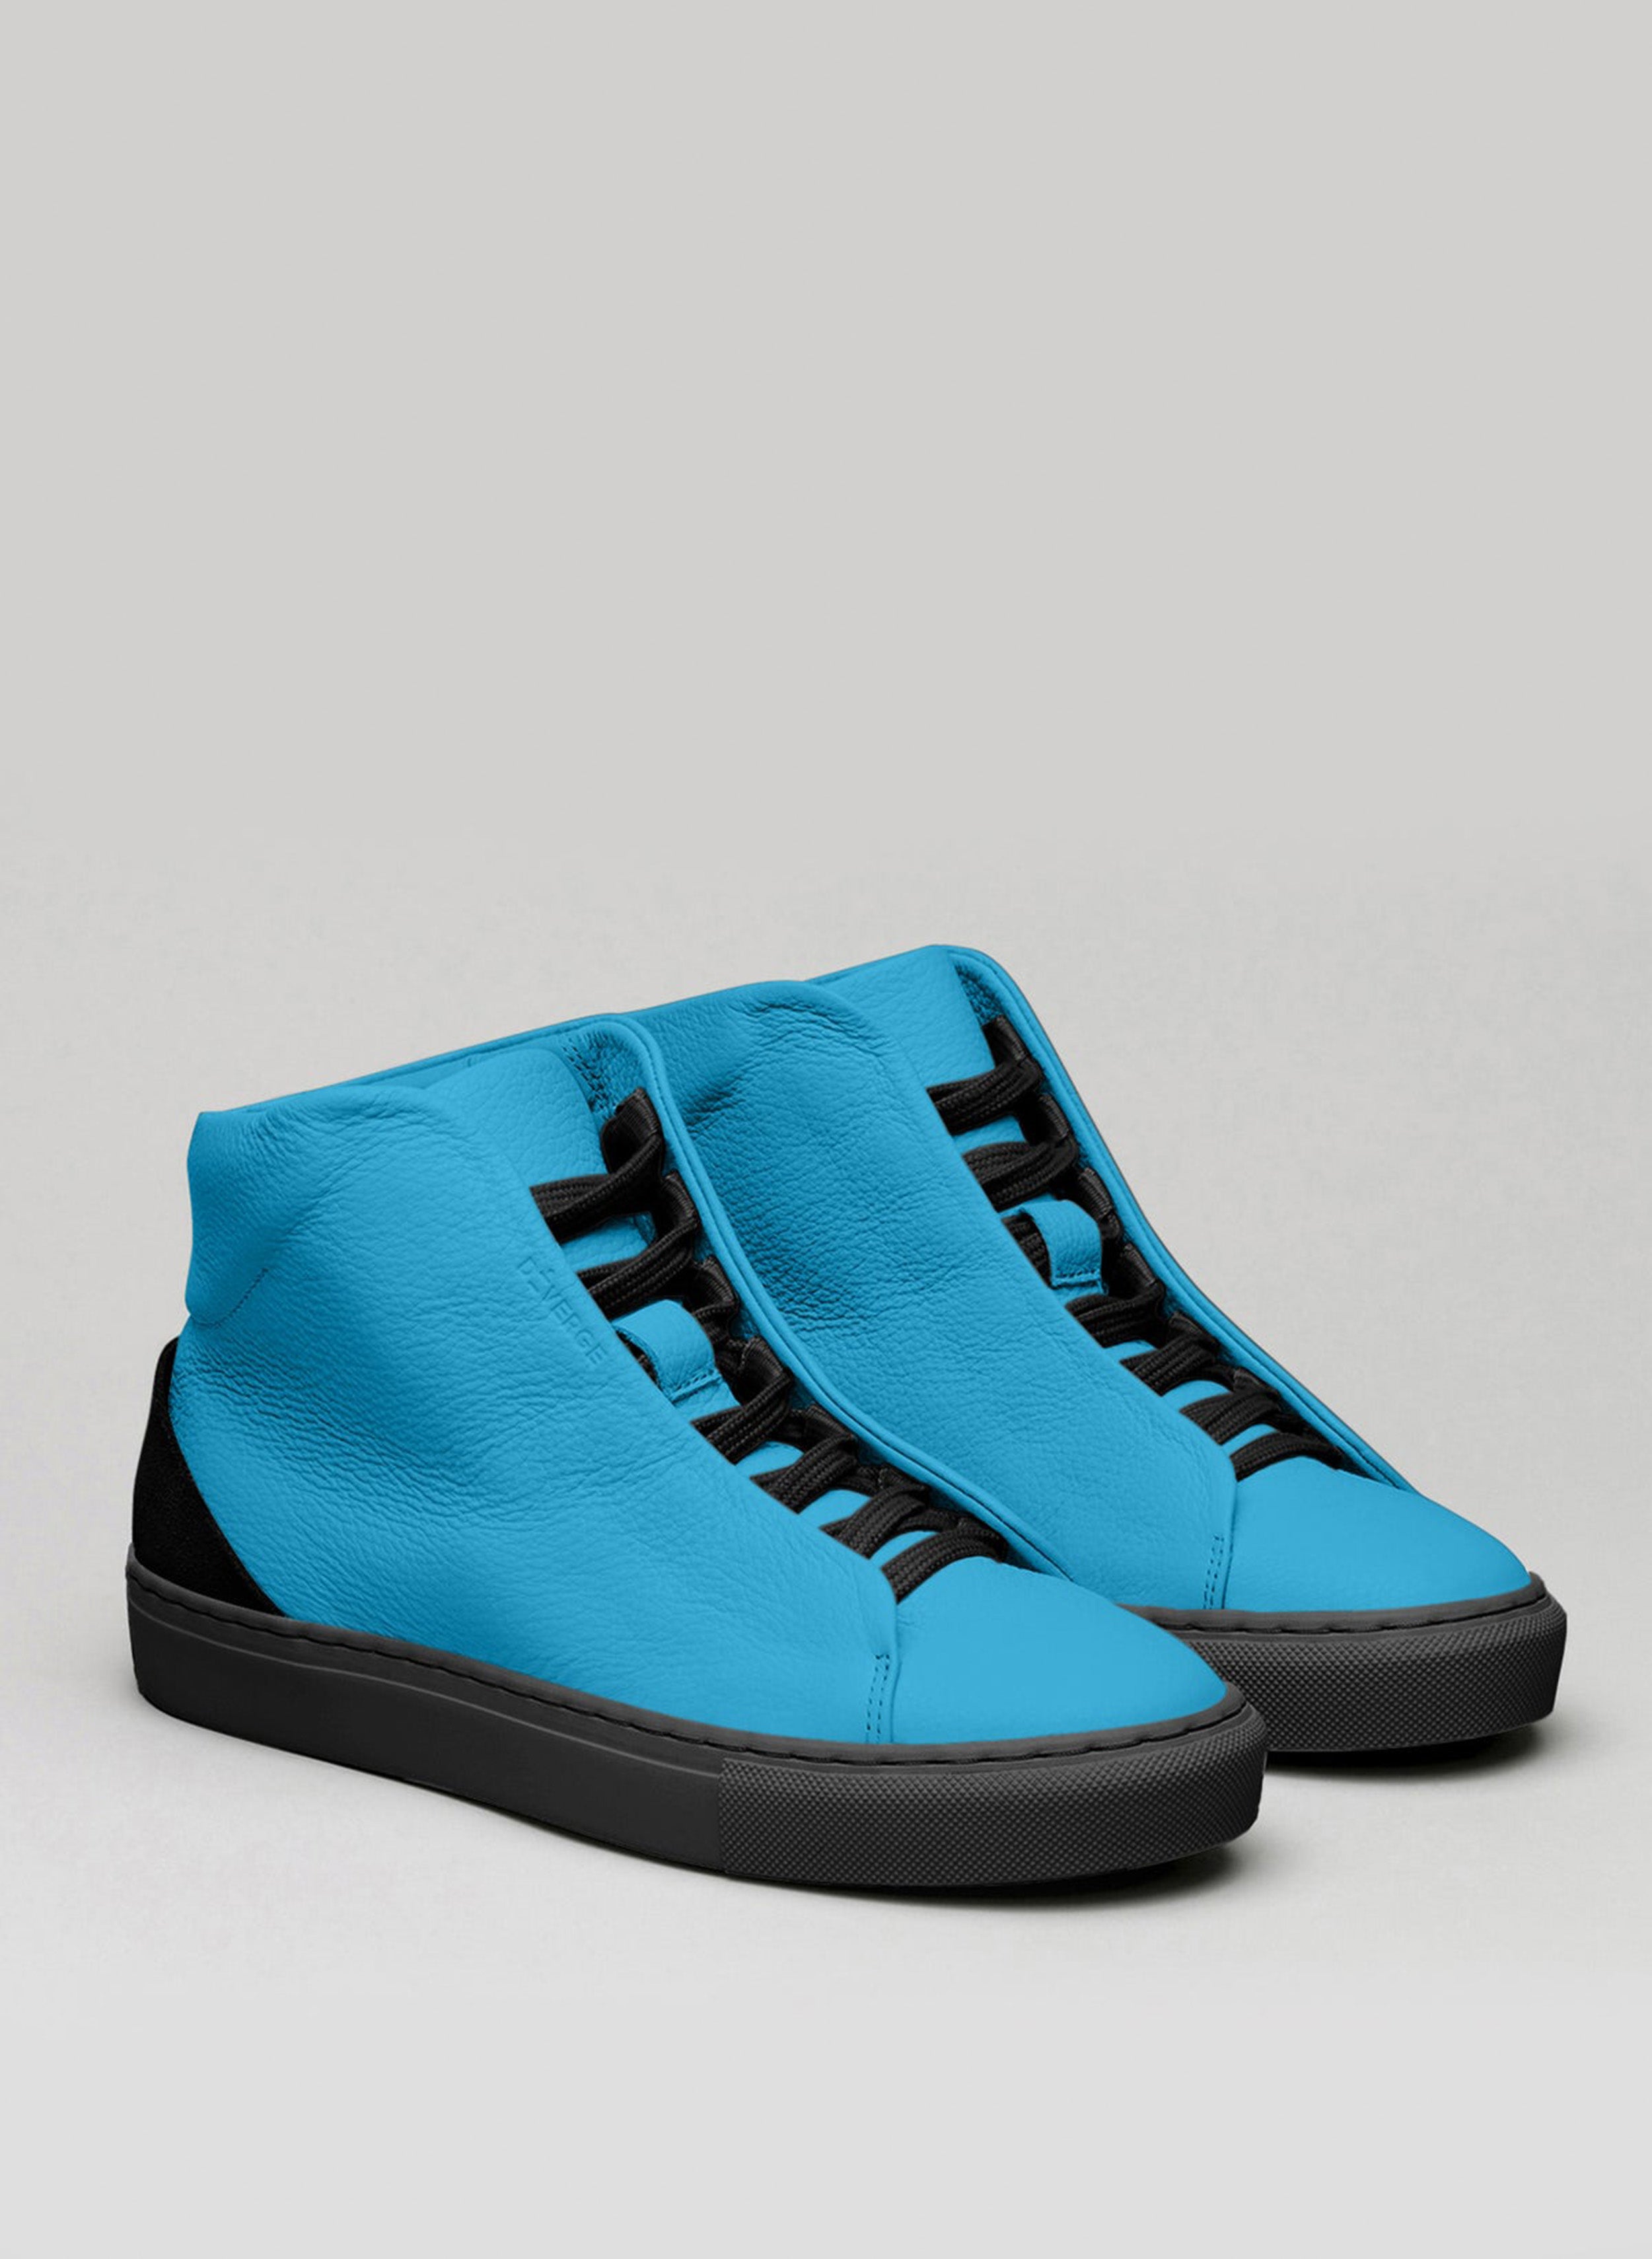 Ein Paar blaue High-Top-Schuhe sneakers mit schwarzen Schnürsenkeln, mit denen die Schuhe von Diverge präsentiert werden.